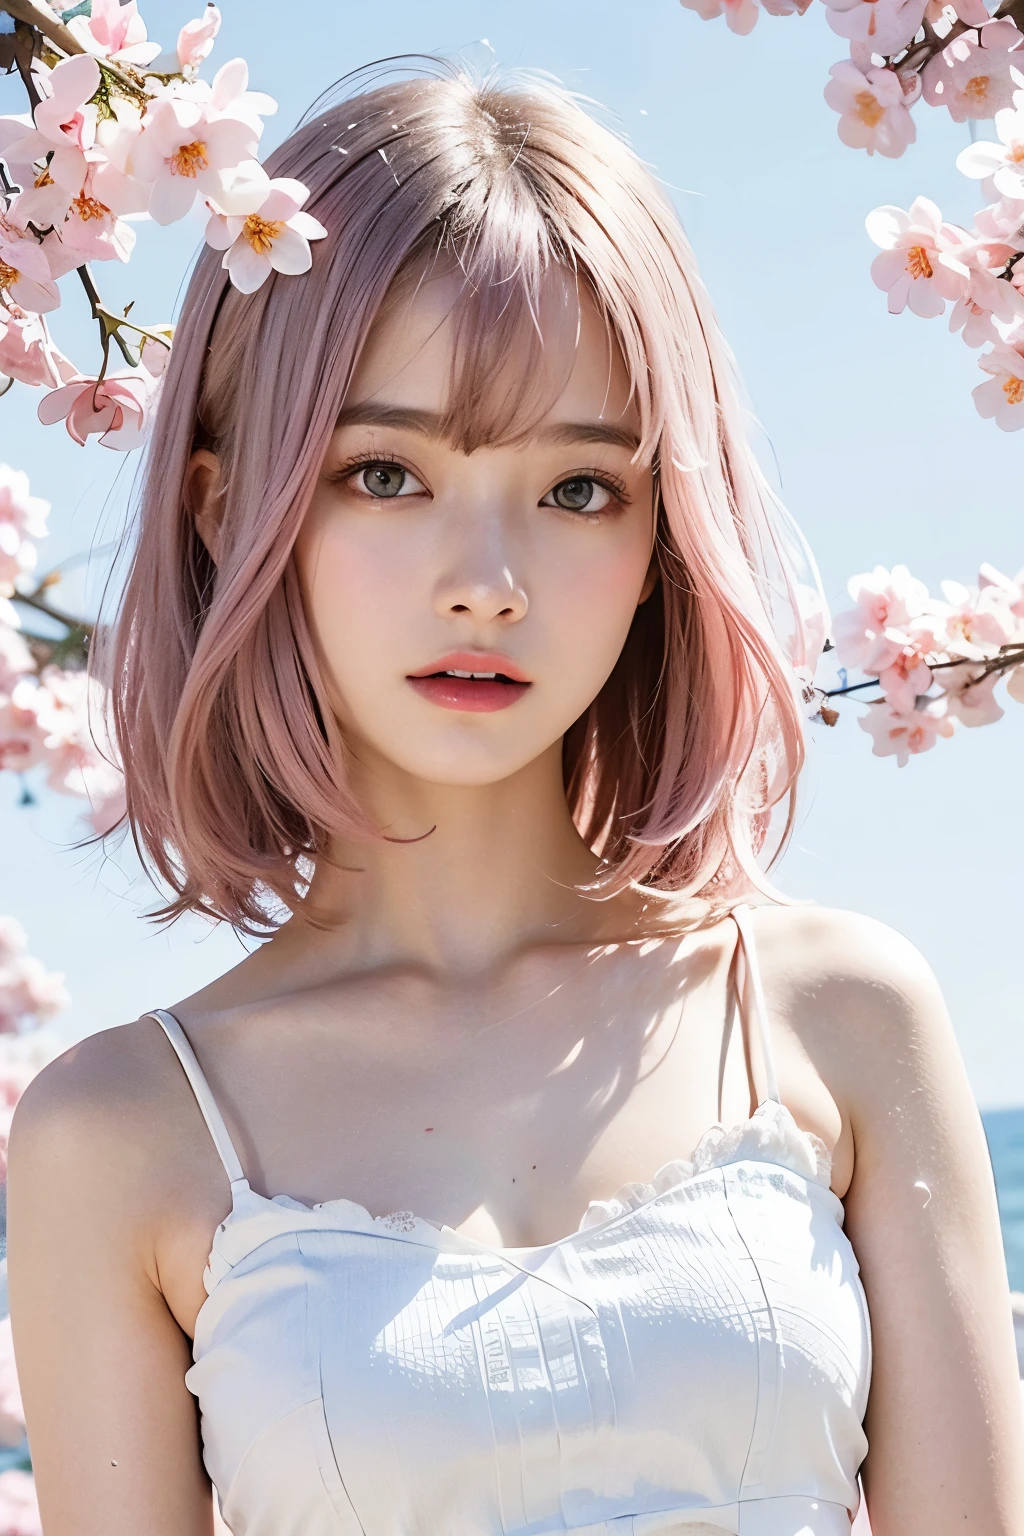 cabello rosa claro, ojos rosados, Rosa y blanco, hojas de sakura, colores vívidos, vestido blanco, Salpicaduras de pintura, fondo sencillo, trazado de rayos, Pelo ondulado